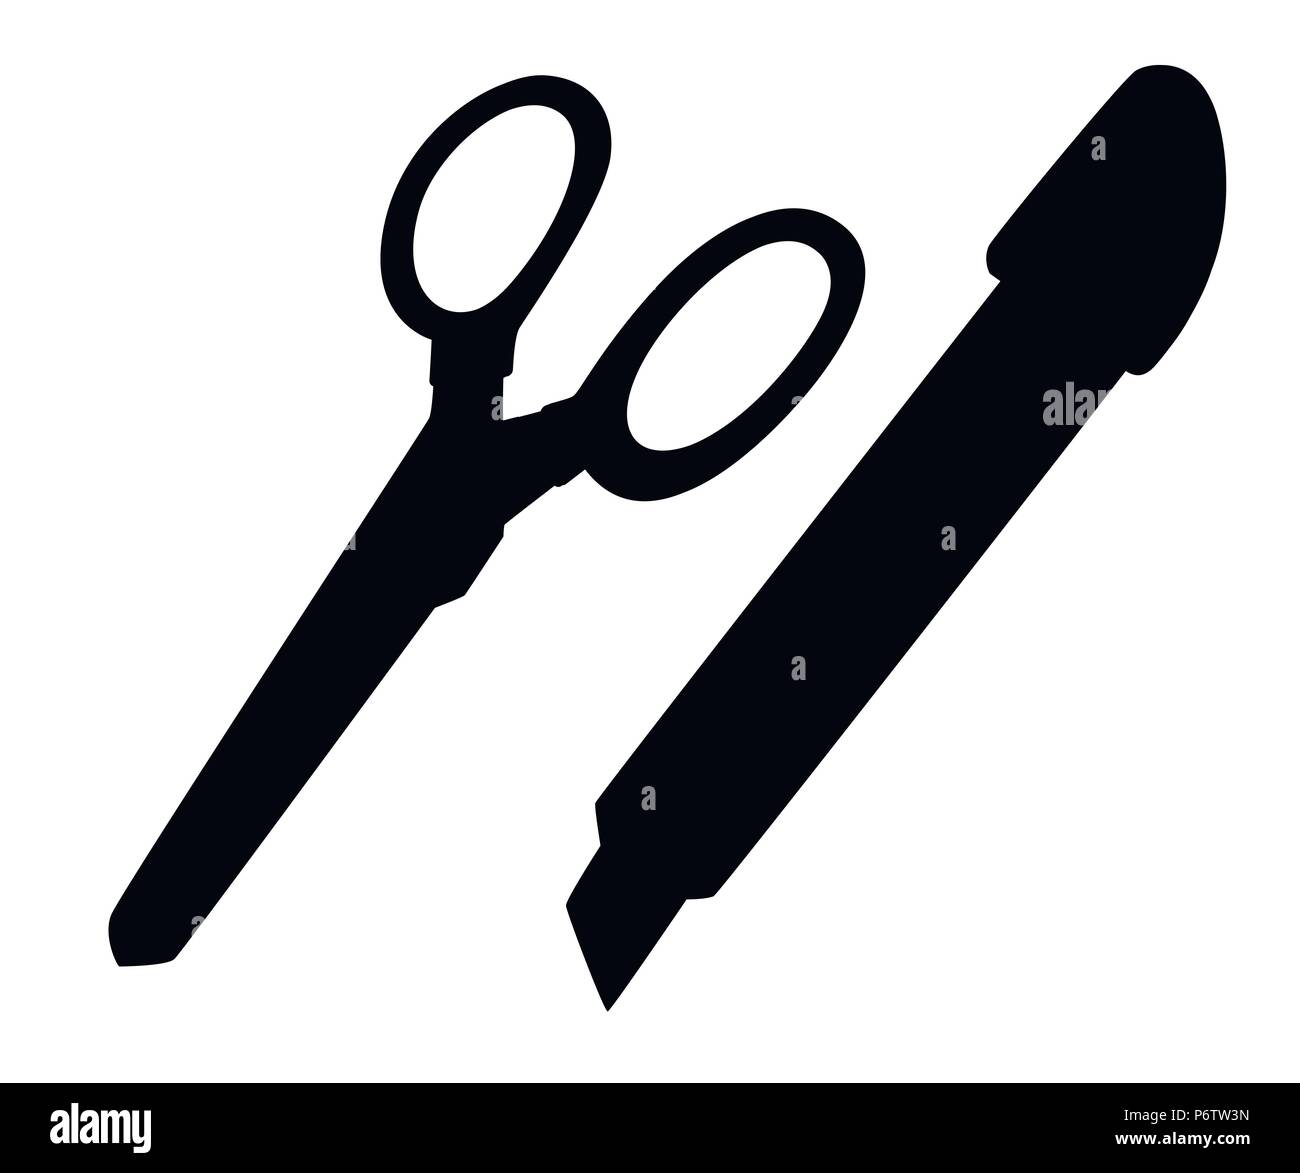 Schwarze Silhouette. Schreibwaren Messer und Schere. Flat Style Design. Office Tools. Vector Illustration auf weißem Hintergrund. Stock Vektor